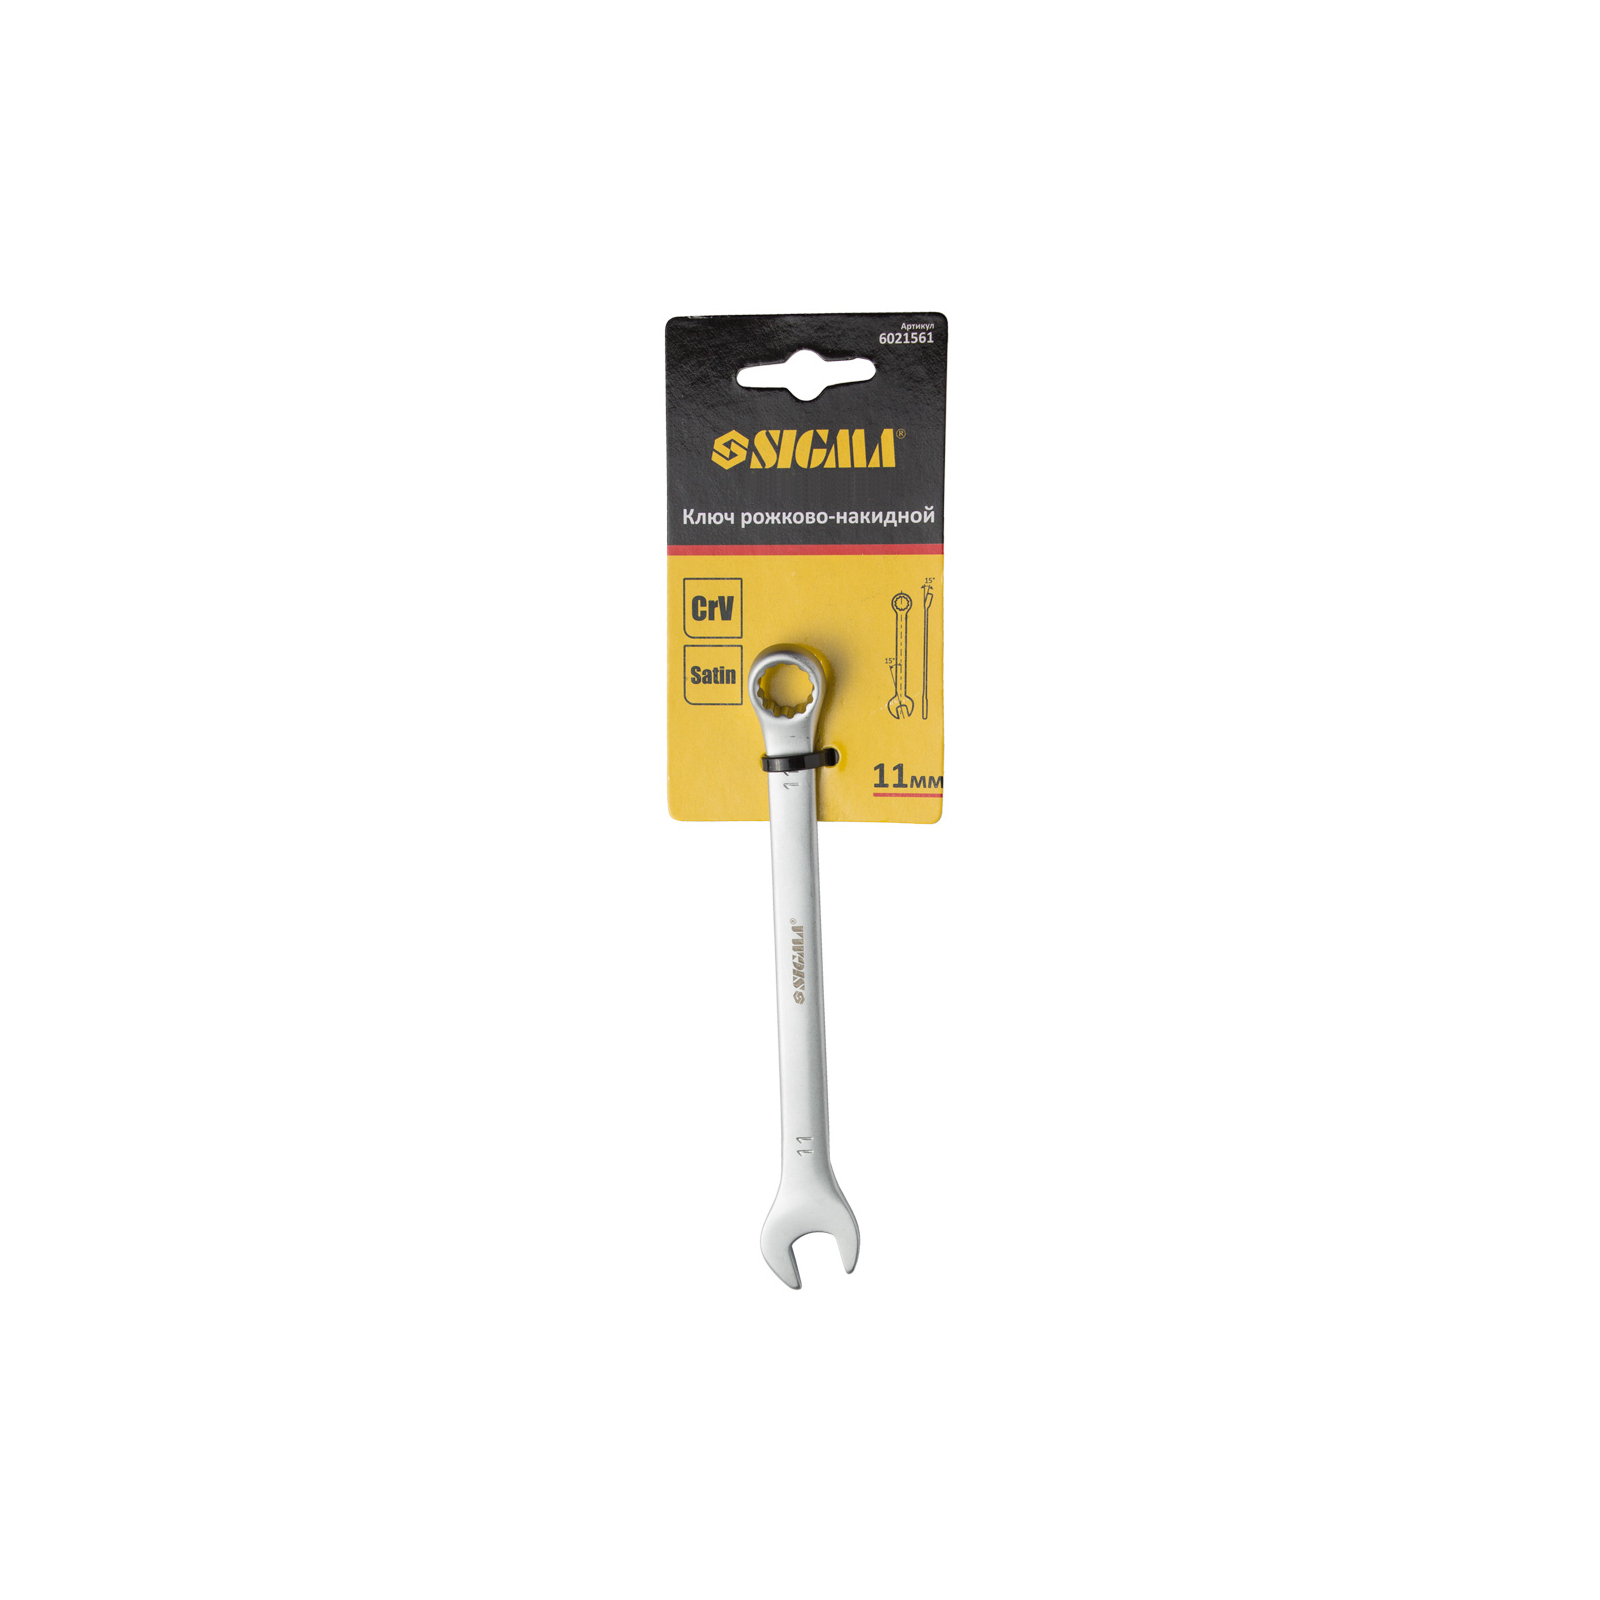 Ключ Sigma рожково-накидной 10мм CrV satine с подвесом (6021551) изображение 4